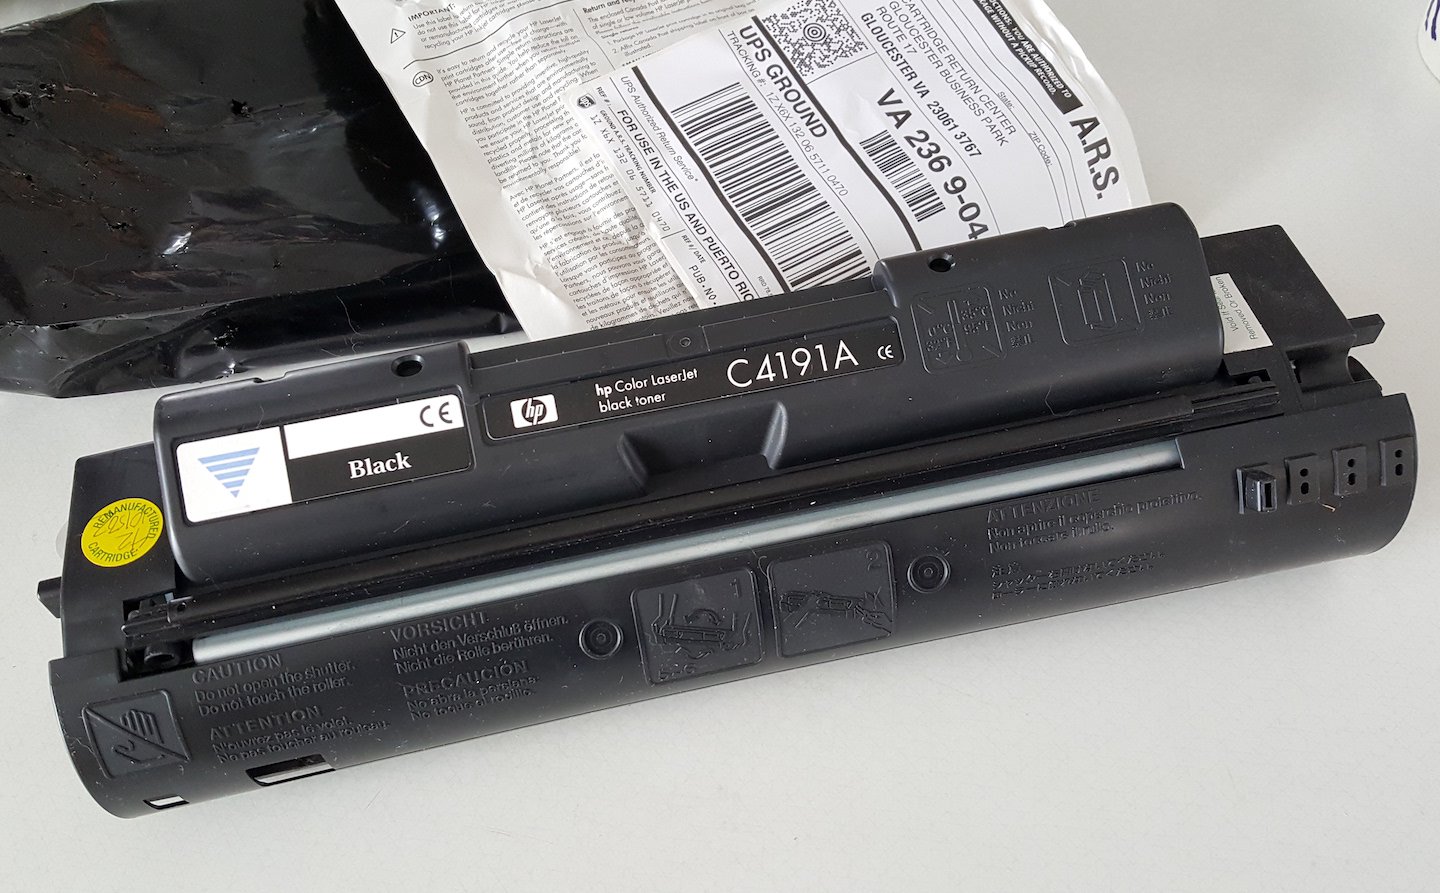 OEM Genuine HP C4191A Black Toner Cartridge - opened, appears unused.